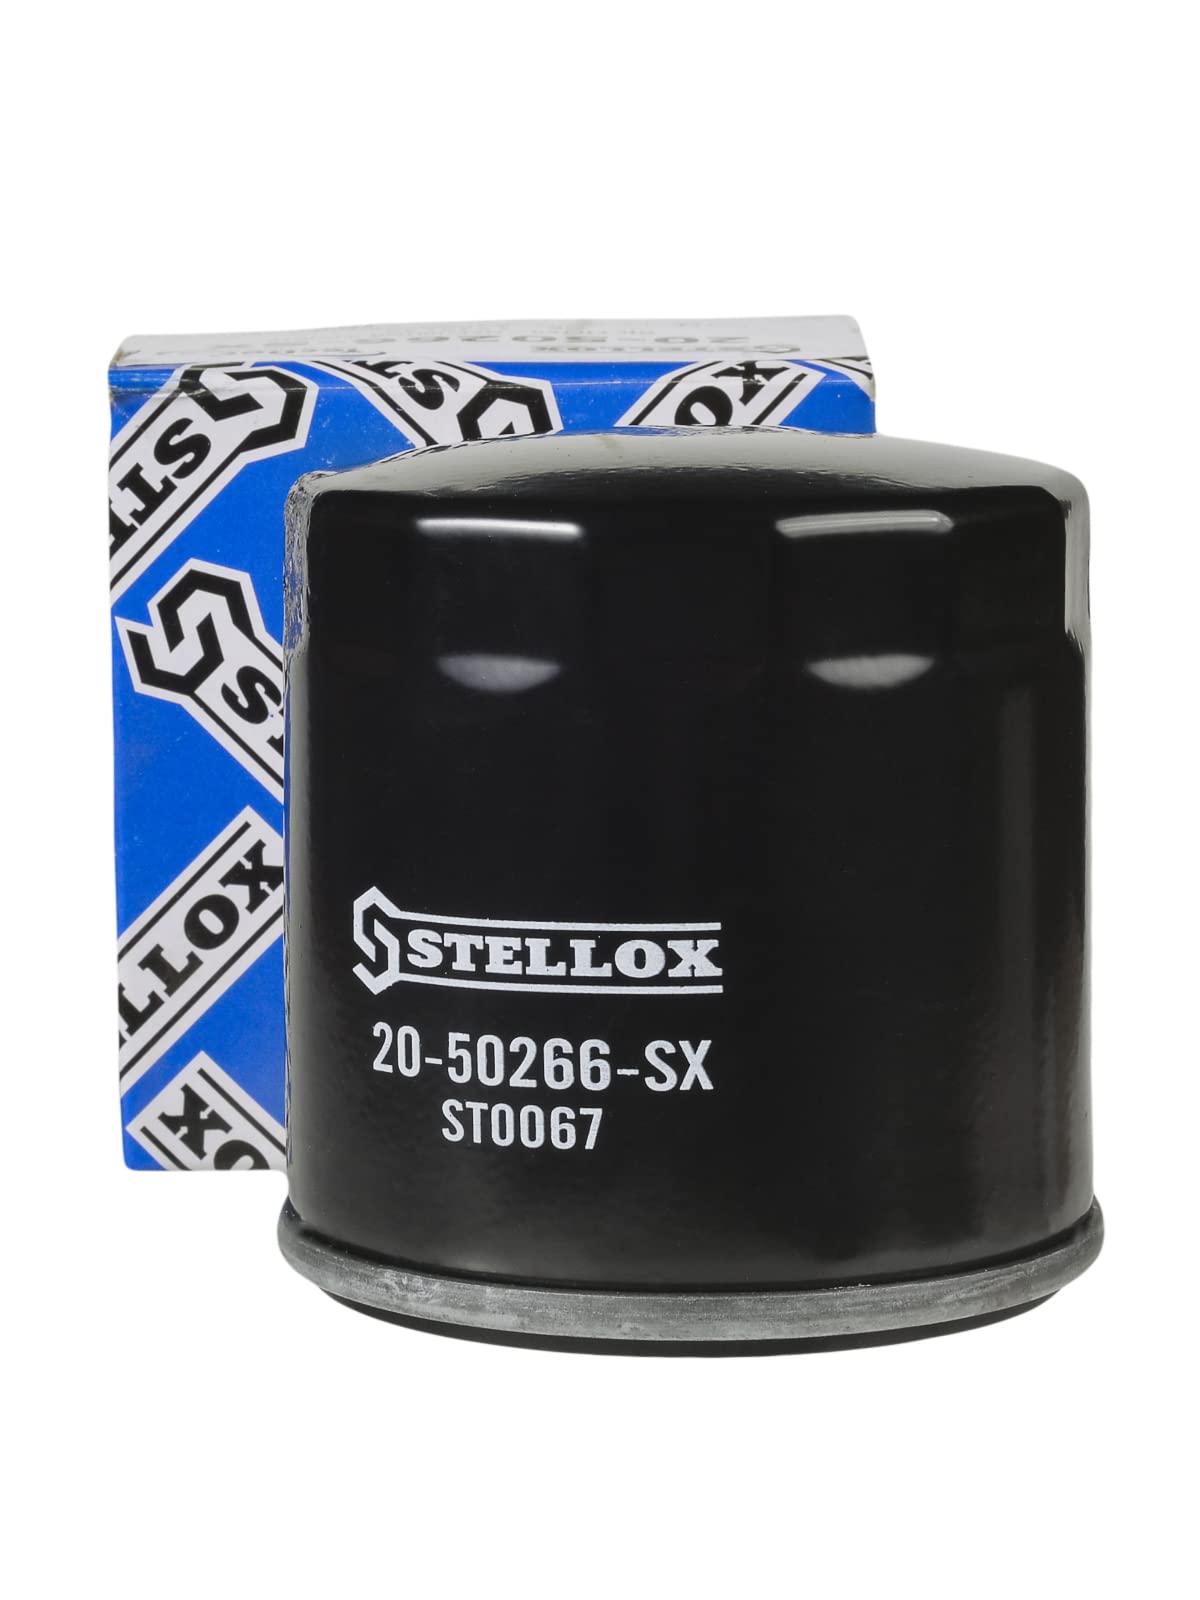 STELLOX 20-50266-SX Ölfilter – Wechselfilter – Gewindegröße: 3/4"-16UNF-2B – Für PKW und Nutzfahrzeuge von STELLOX